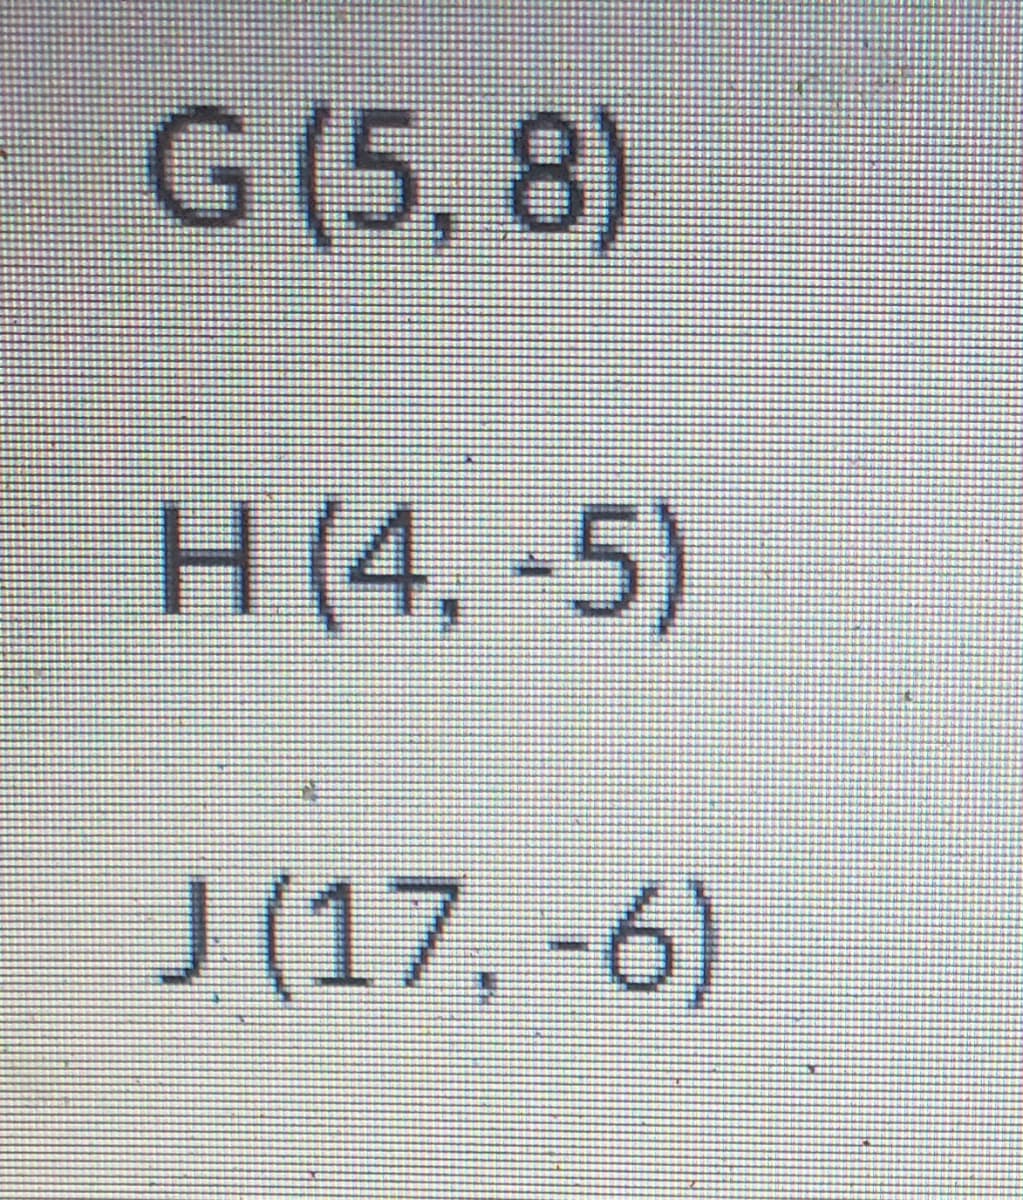 G (5,8)
H (4,-5)
J (17,-6)